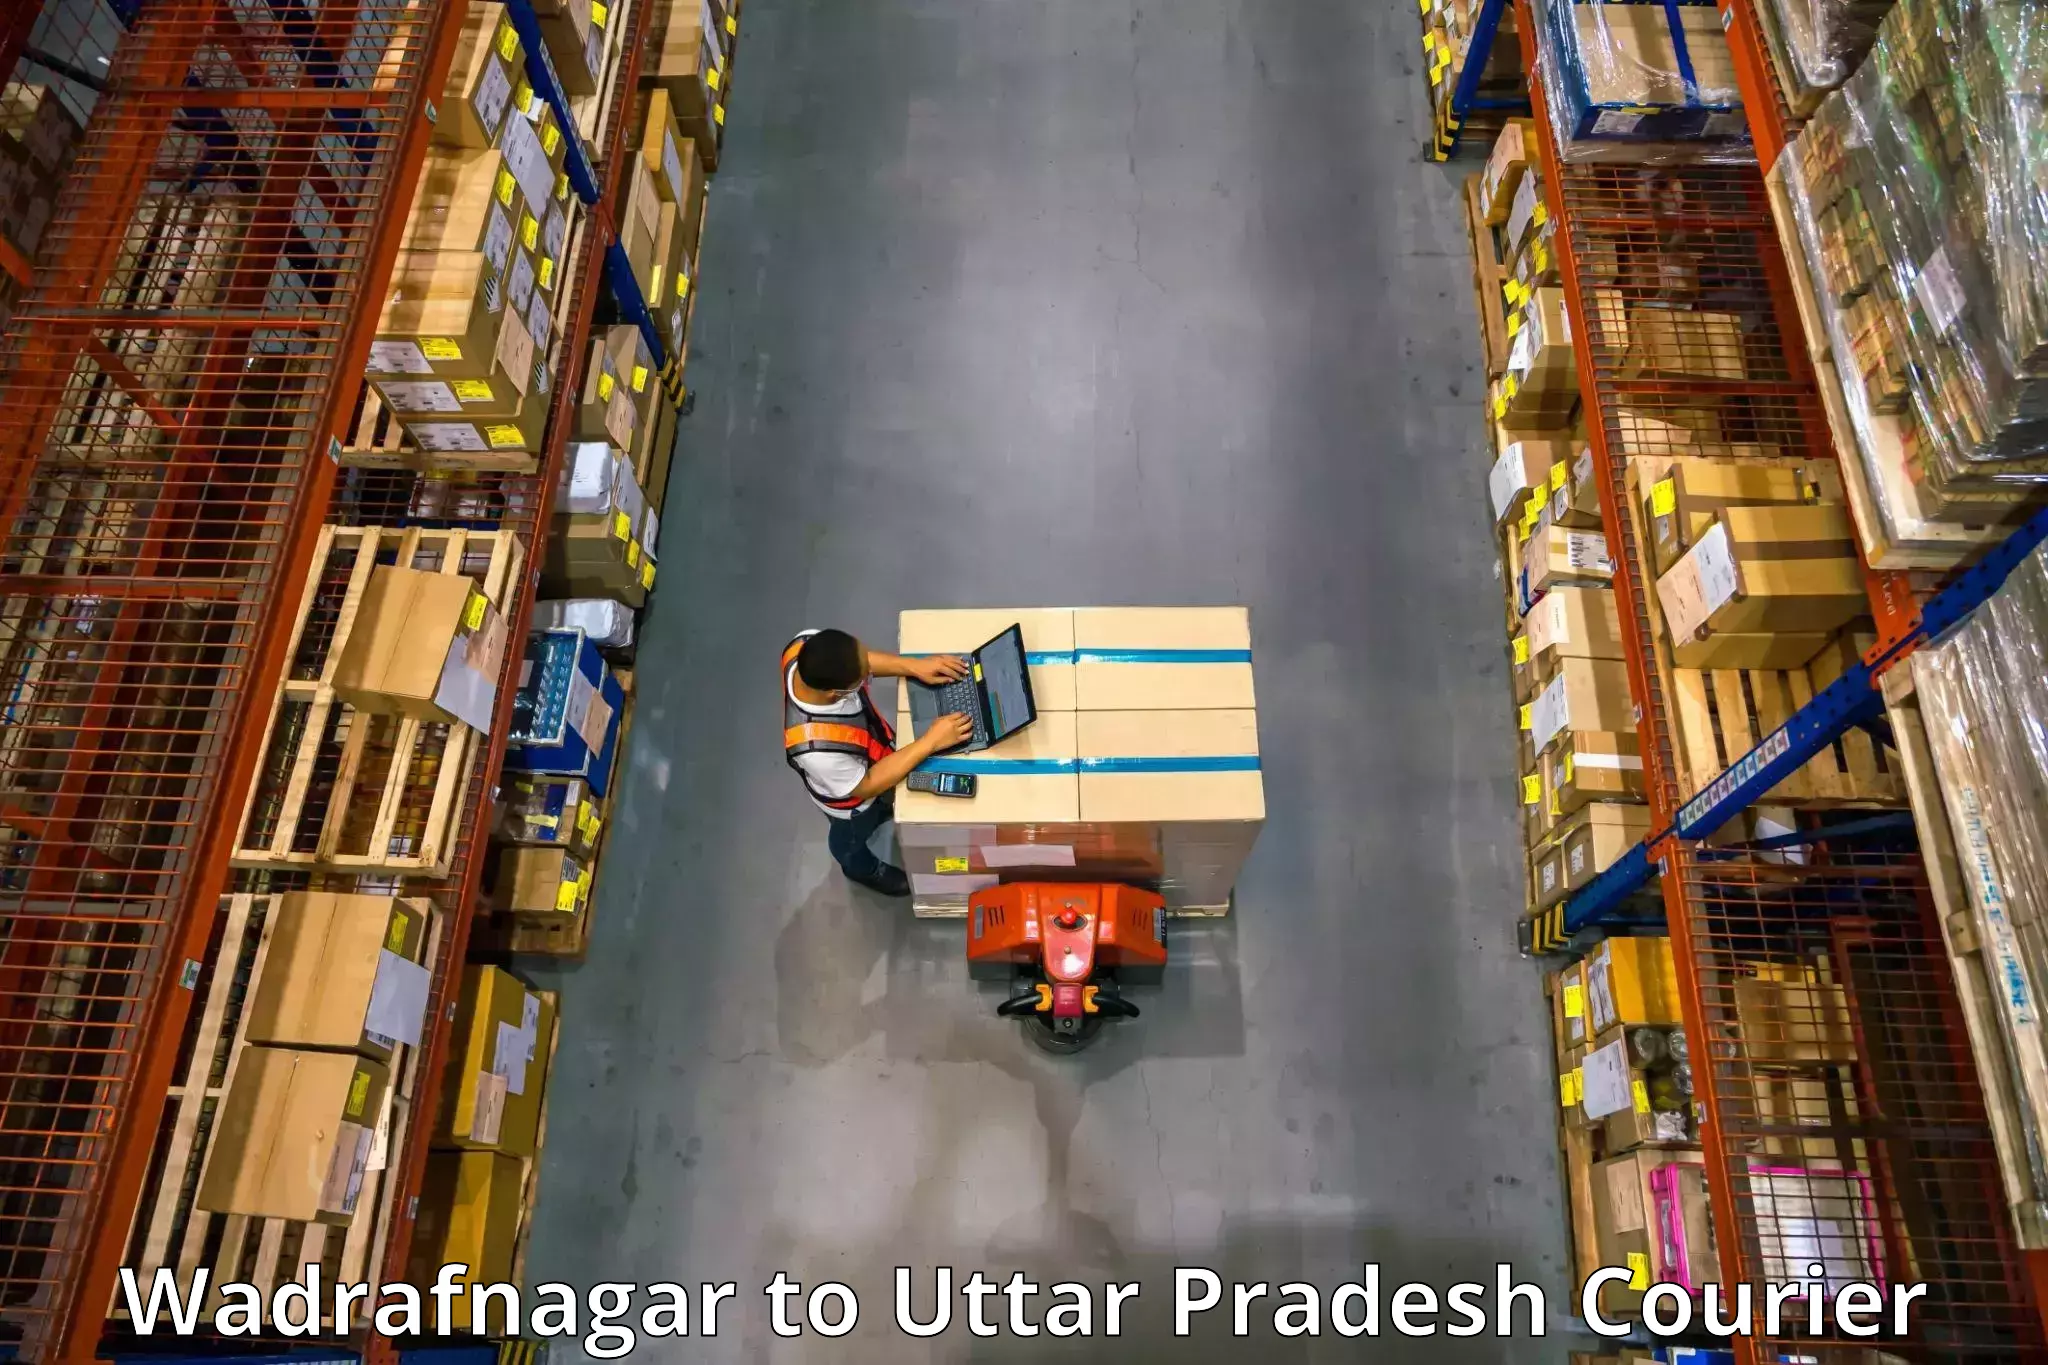 Expert furniture transport Wadrafnagar to Aligarh